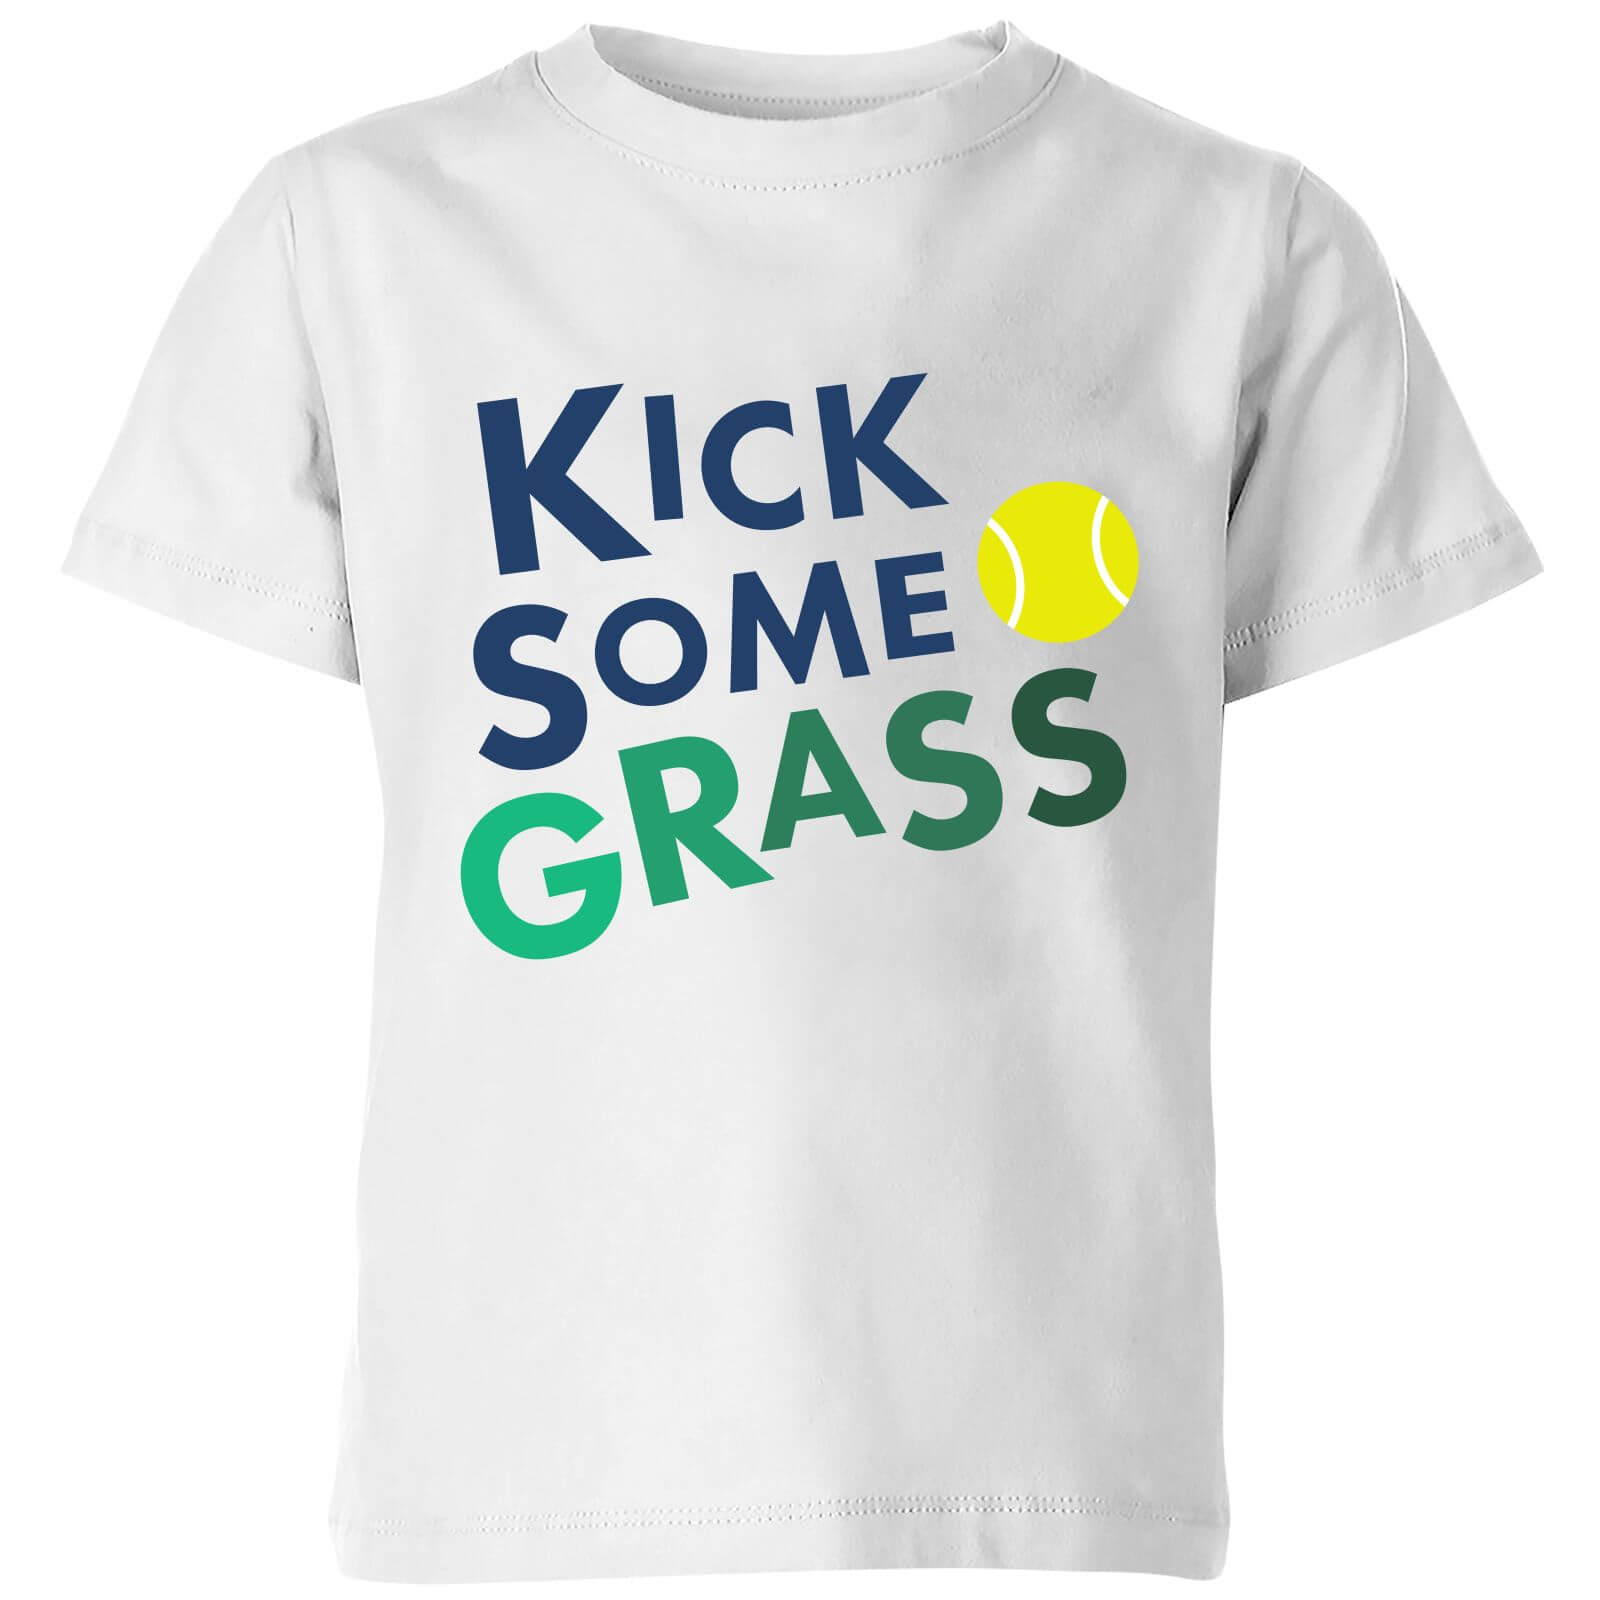 Kick Some Grass Kids' T-Shirt - White - 3-4 Years - White